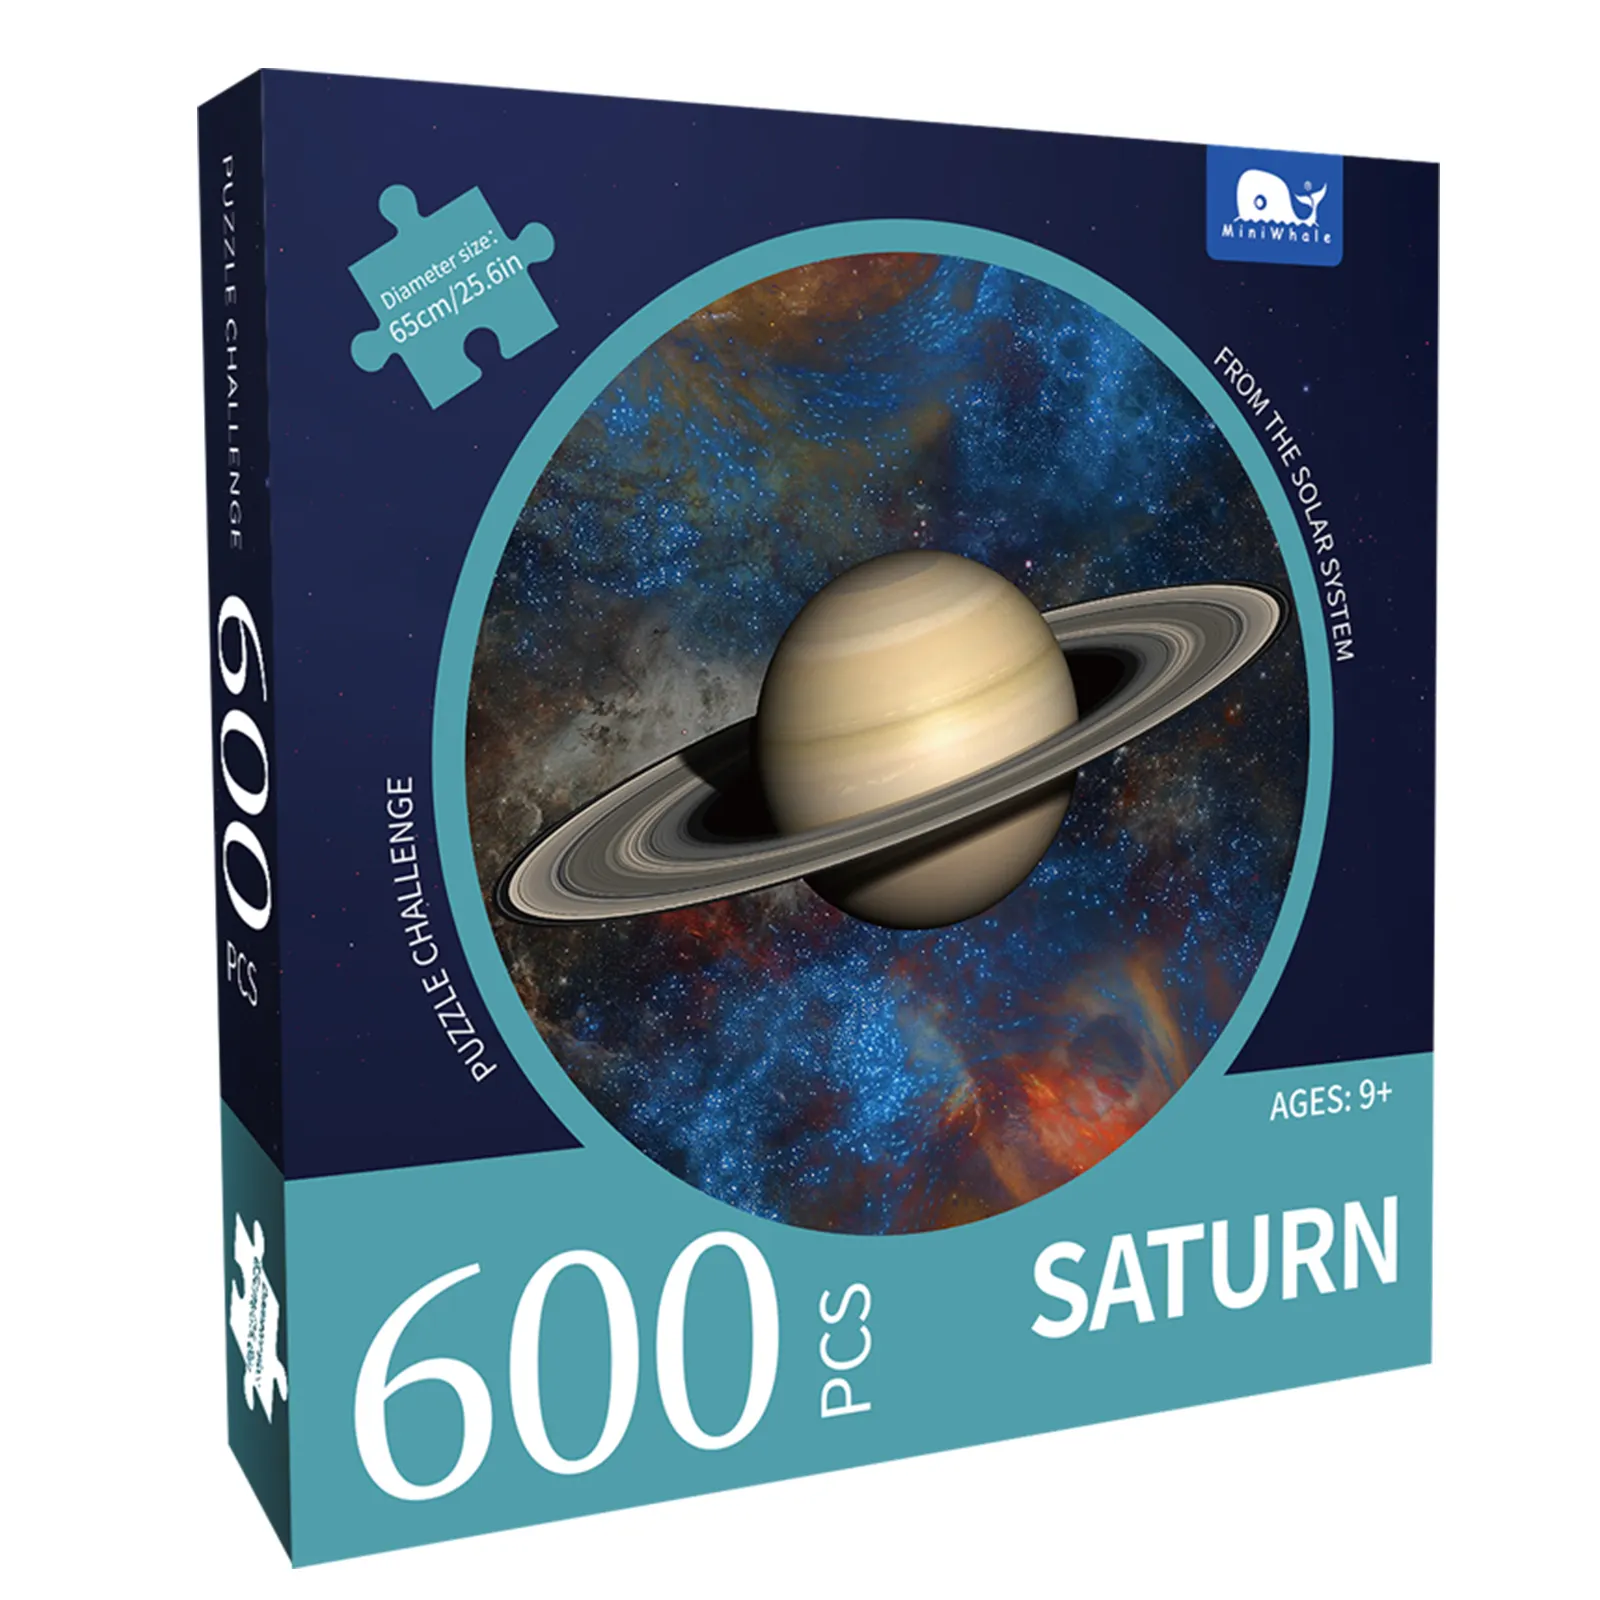 Круглый пазл CMYK, 600 шт., планеты Сатурн, производитель игр-пазлов, другие головоломки, индивидуальный логотип и упаковочная коробка